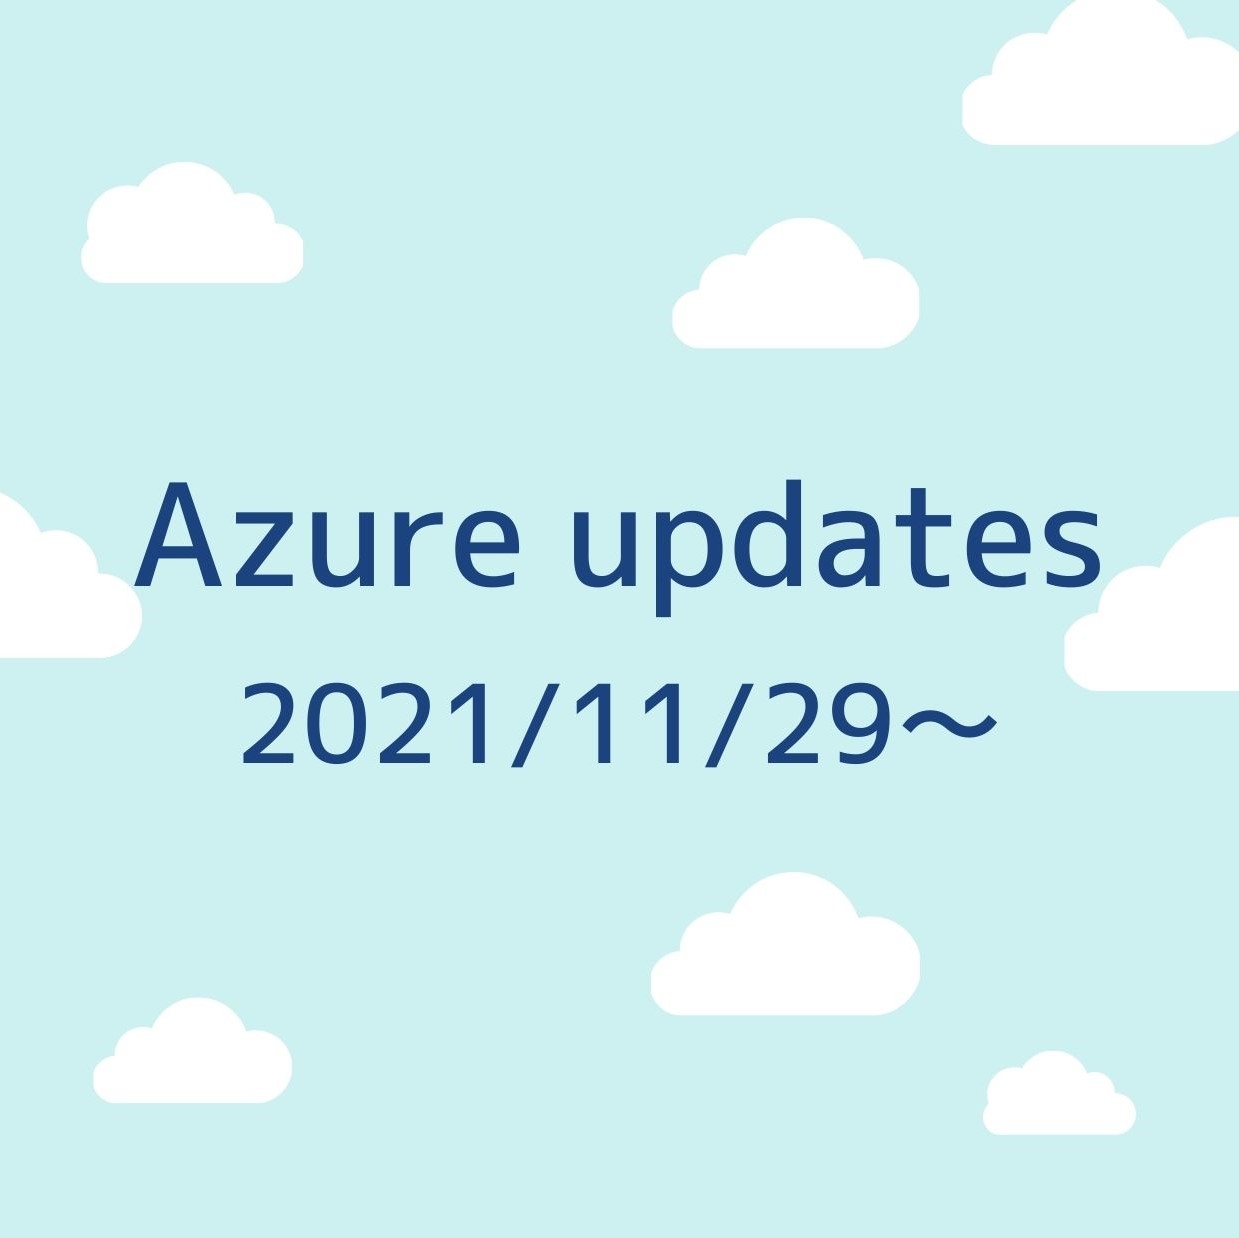 2021/11/29週の Azure updates 日本語速報